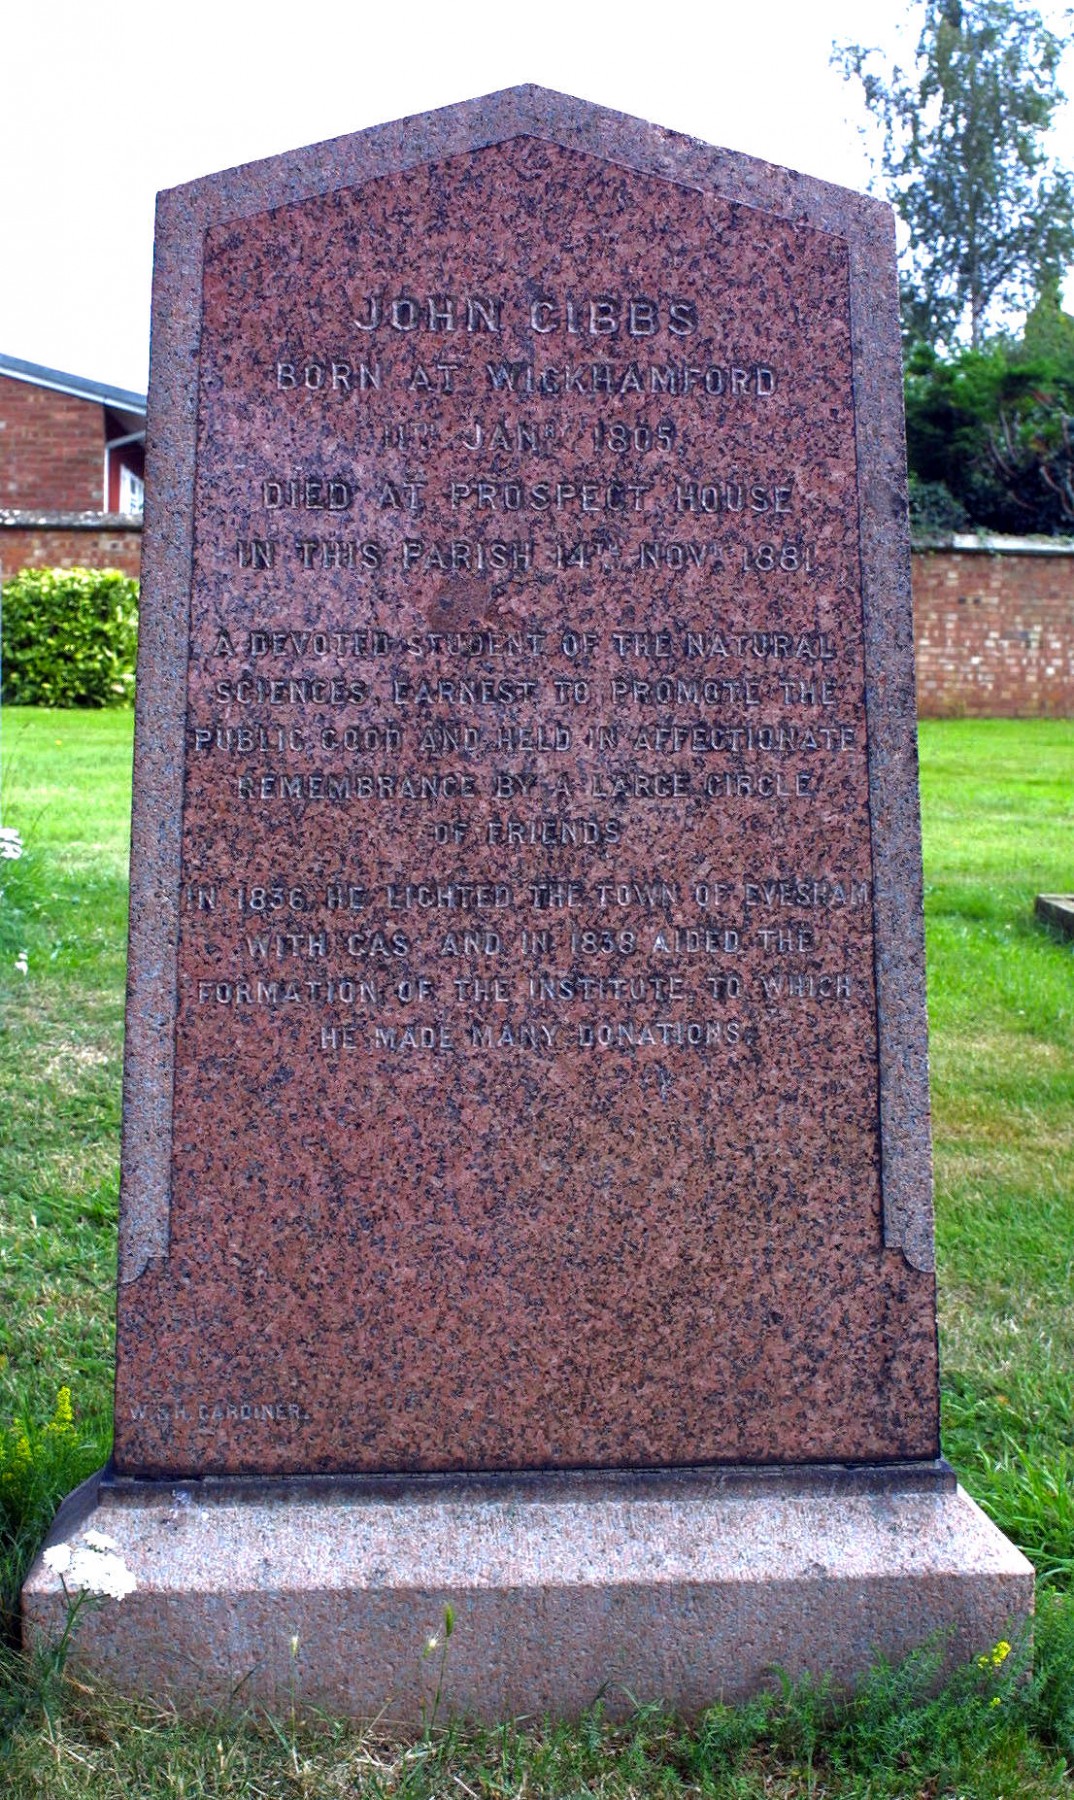 John Gibbs' grave